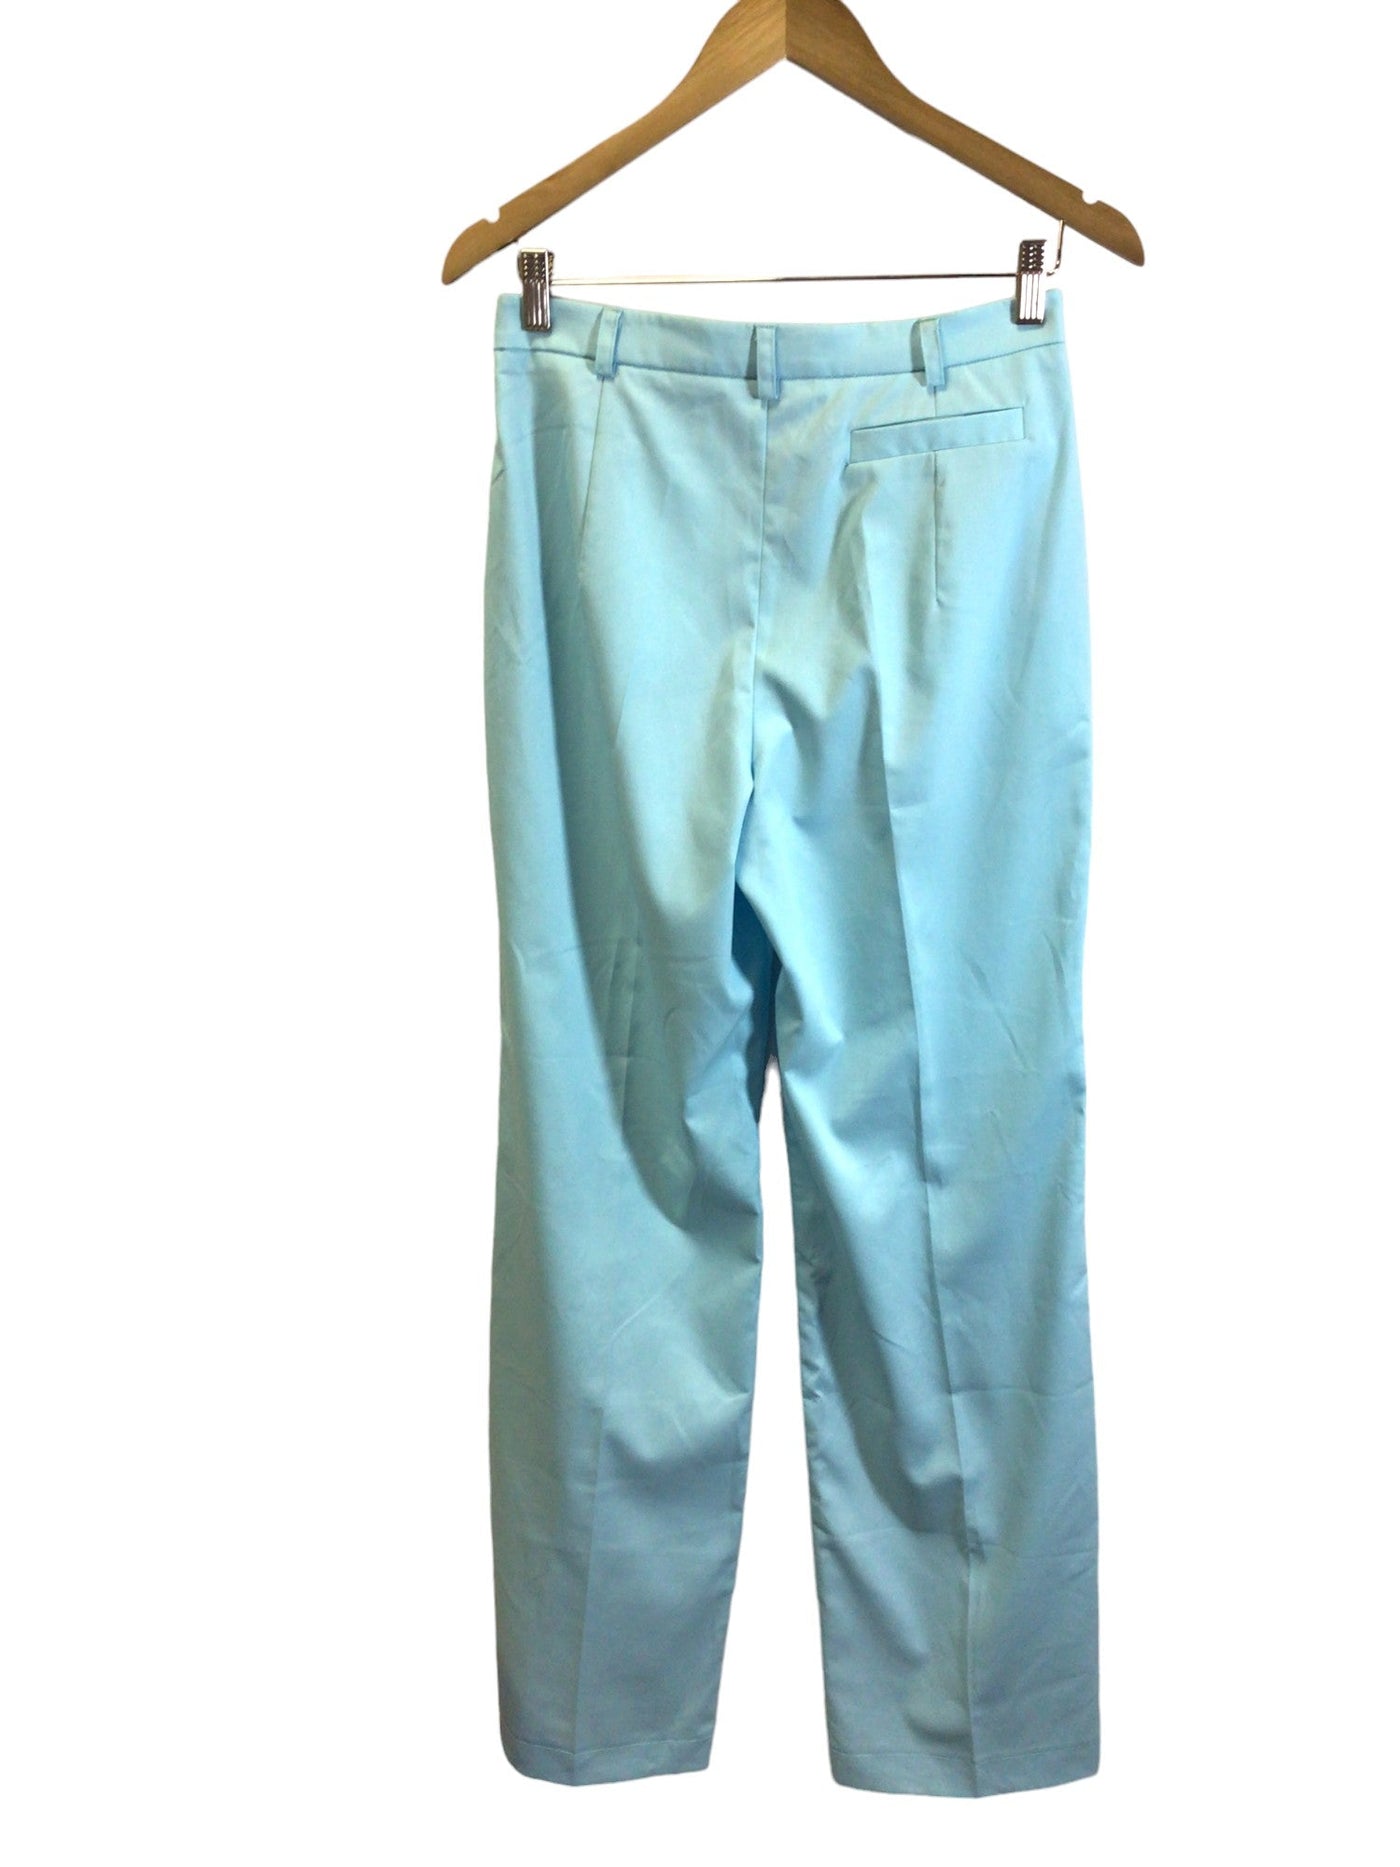 TAVROVSKA Women Work Pants Regular fit in Blue - Size 40 | 15 $ KOOP